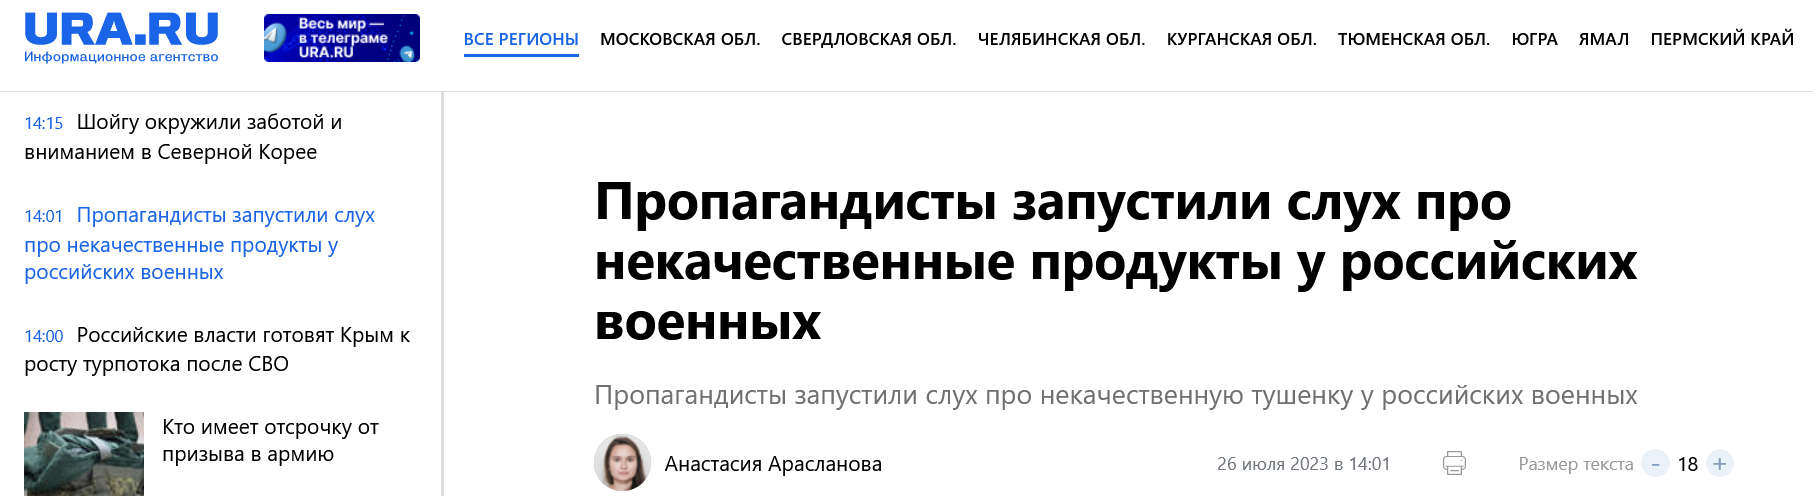 Screenshot 2023 07 26 At 14 00 18 Propagandisty Zapustili Sluh Pro Nekachestvennye Produkty U Rossijskih Voennyh